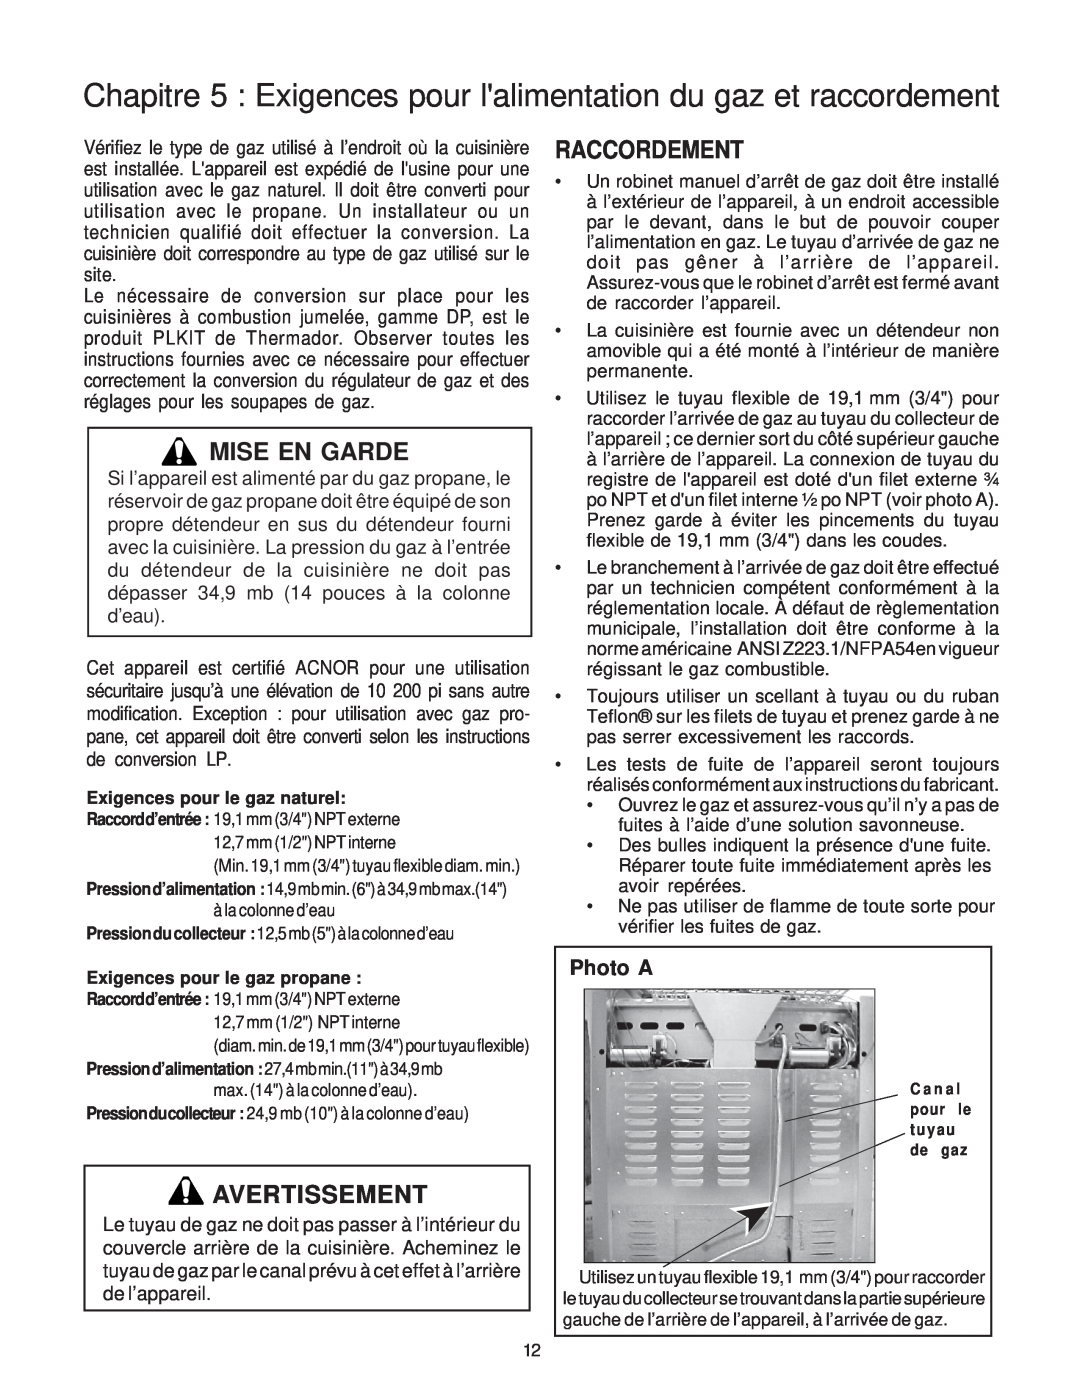 Thermador PD30, PD36, PD48 Chapitre 5 Exigences pour lalimentation du gaz et raccordement, Raccordement, Photo A 